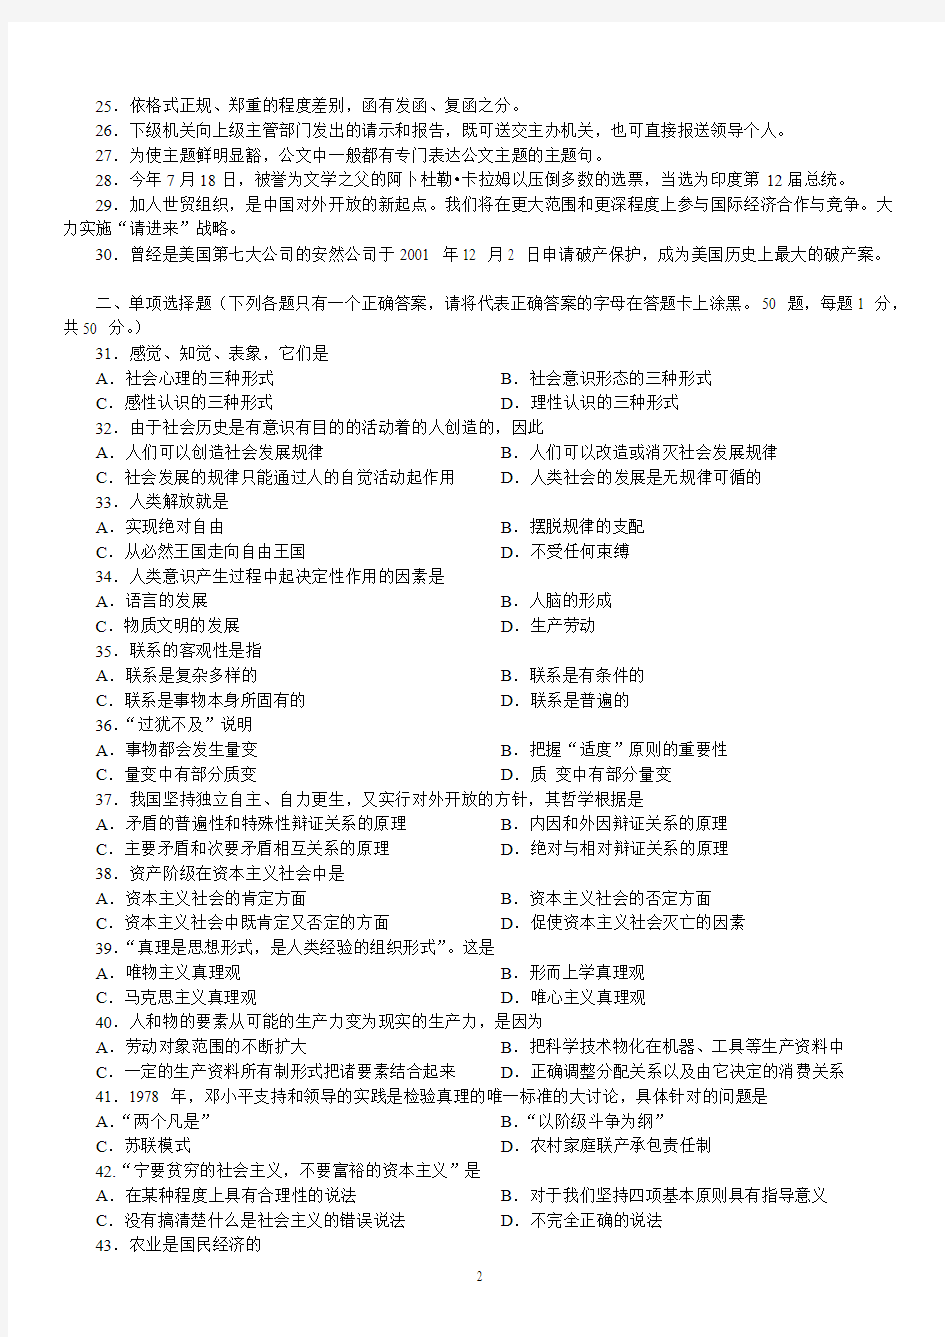 2002年下半年广西壮族自治区公务员录用考试《公共基础知识》真题及标准答案